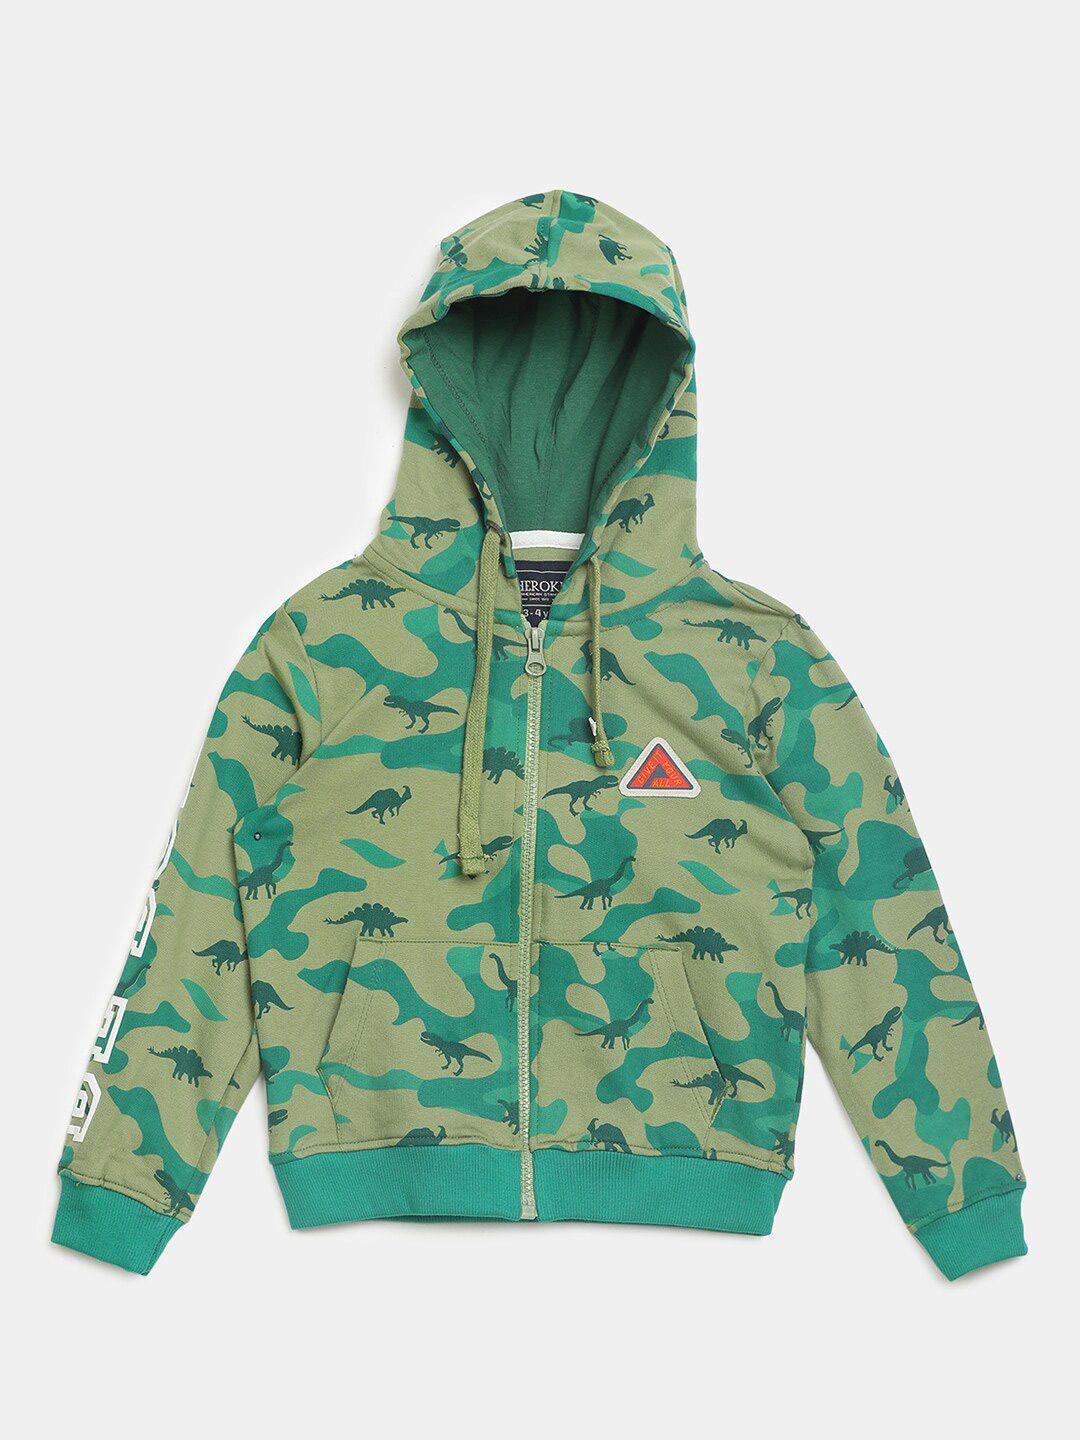 v-mart boys olive green camouflage hooded neck open front jacket